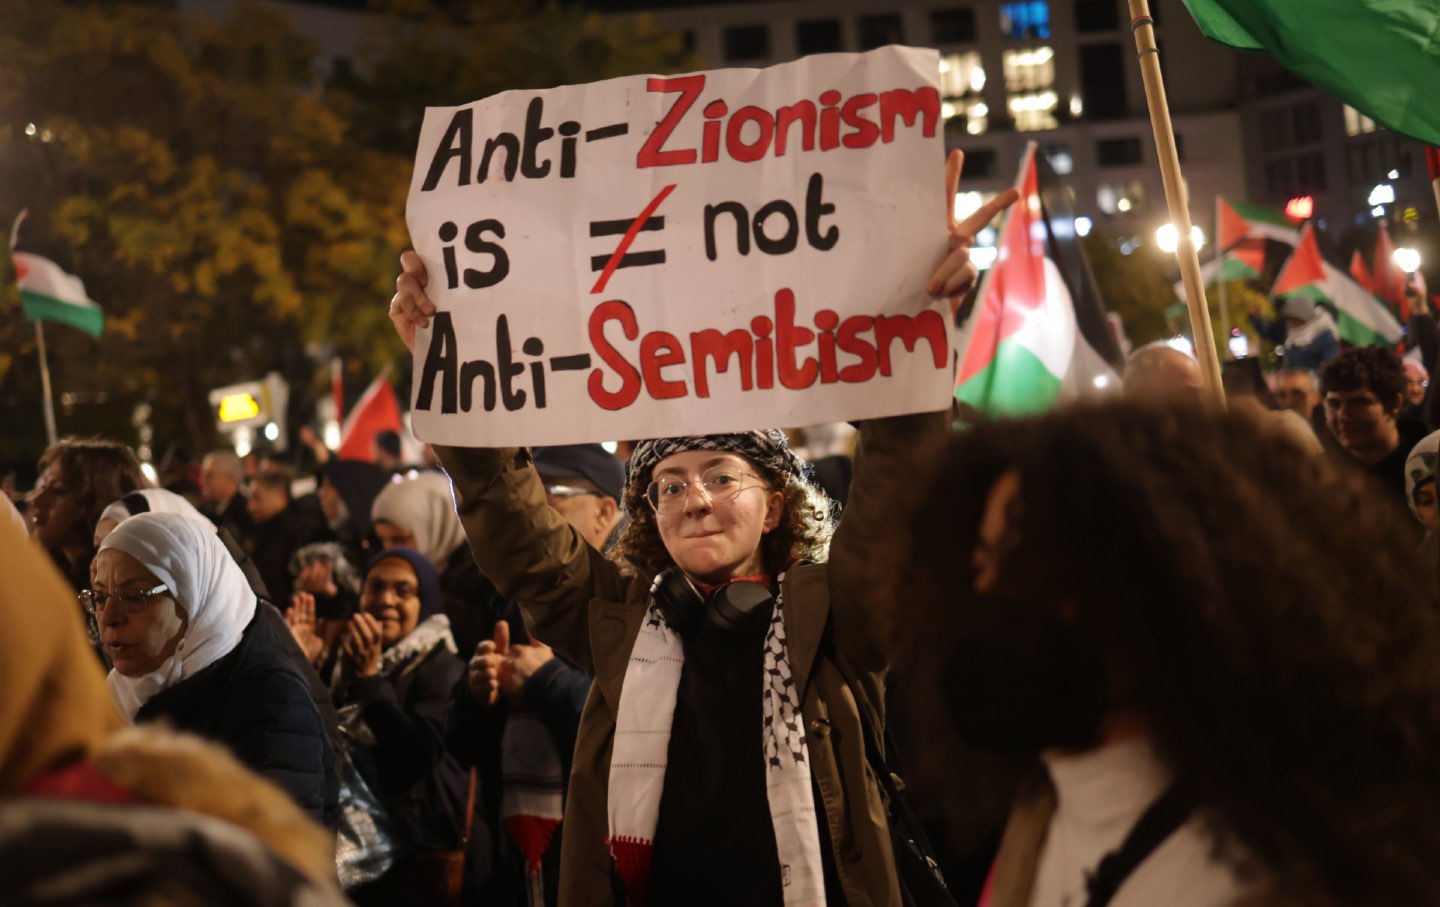 Antizionismus ist kein Antisemitismus, trotz Hausbeschluss 894, David Kustoff, Max Miller